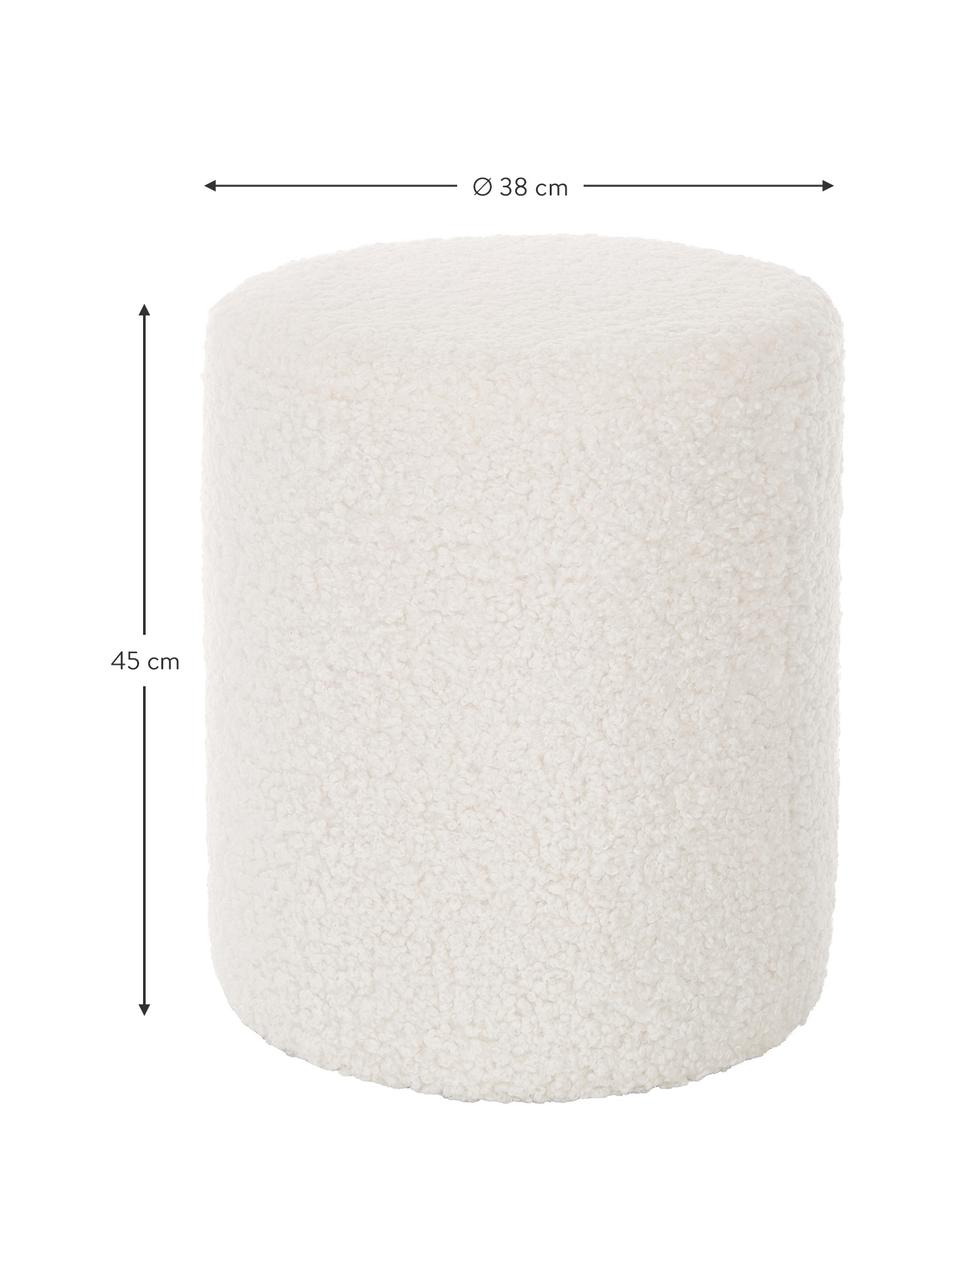 Pouf in tessuto teddy bianco crema Daisy, Rivestimento: poliestere (teddy) 40.000, Struttura: compensato, Tessuto teddy bianco crema, Ø 38 x Alt. 45 cm